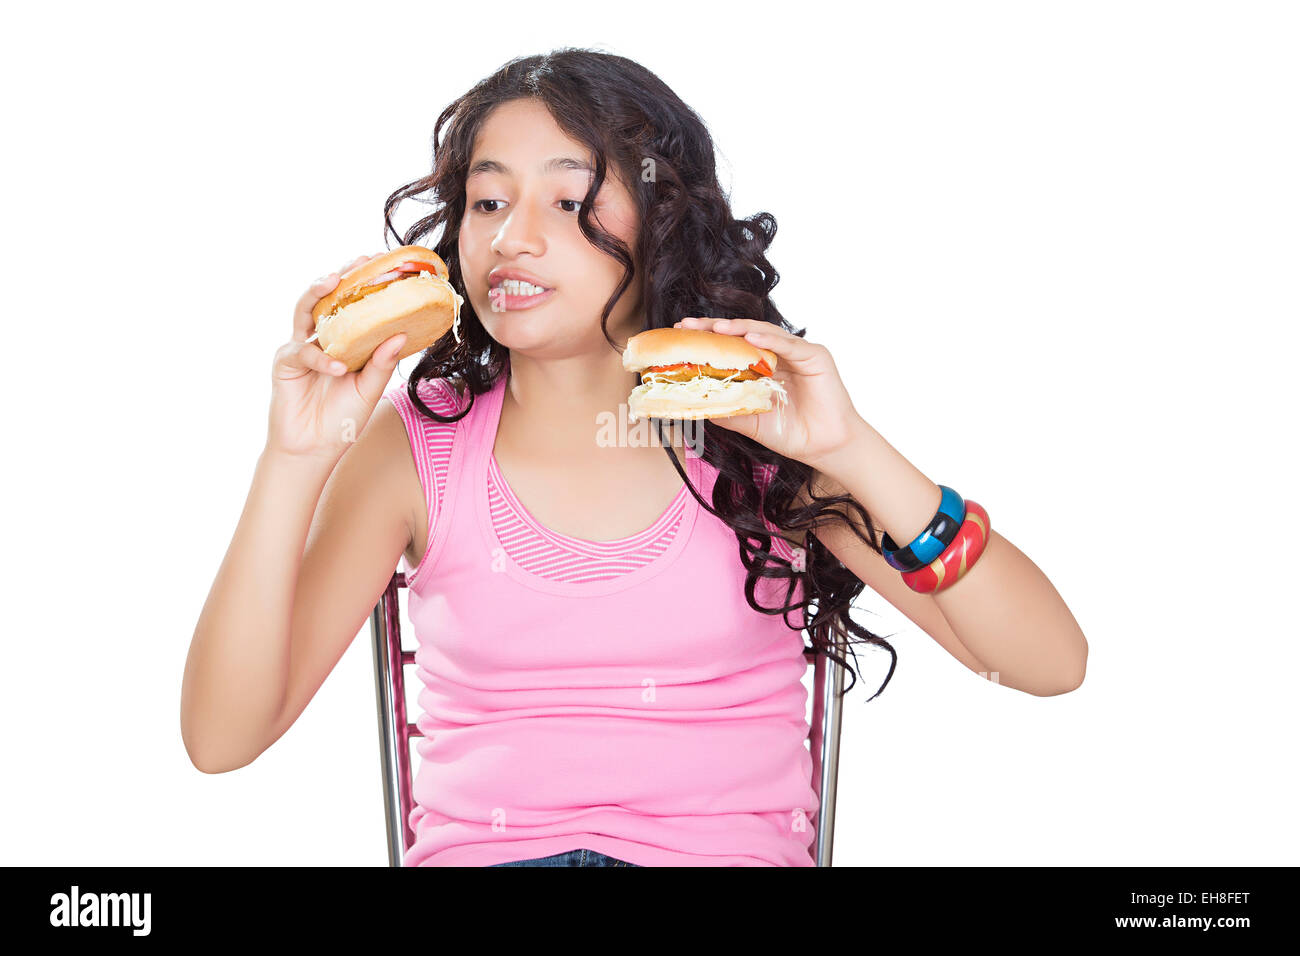 1 indian joven adolescente comiendo hamburguesas deliciosas Foto de stock